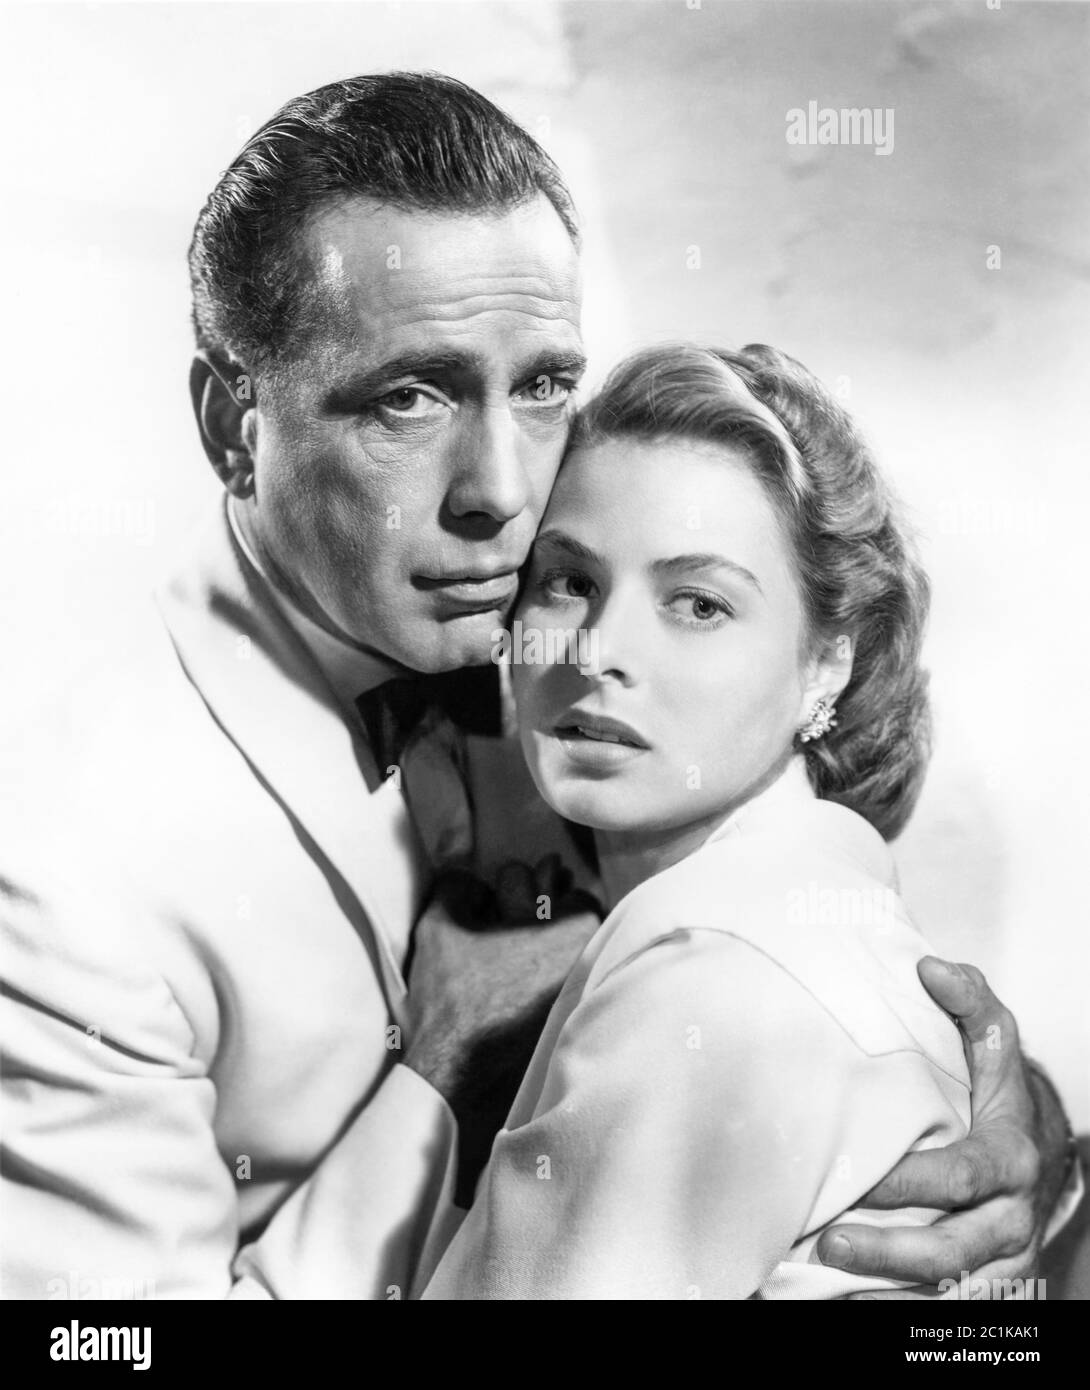 Le star del cinema Humphrey Bogart e Ingrid Bergman del film classico del 1942 Casablanca. Foto Stock